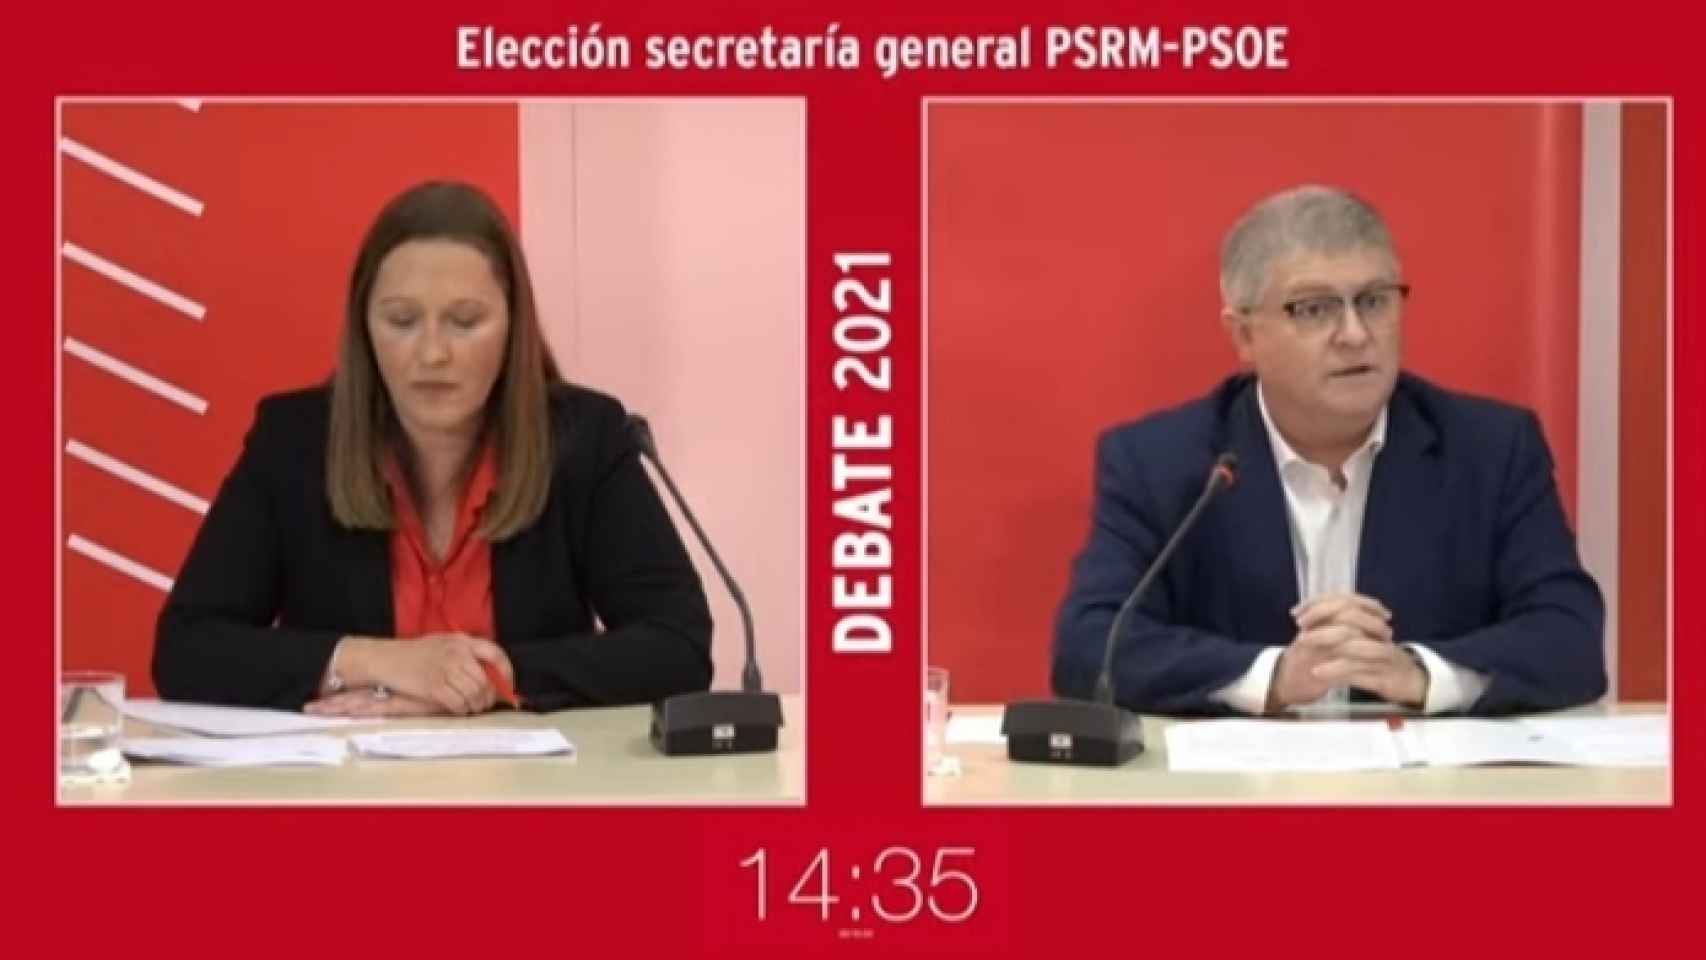 Uno de los momentos del debate de las primarias al PSOE retransmitido en Youtube.